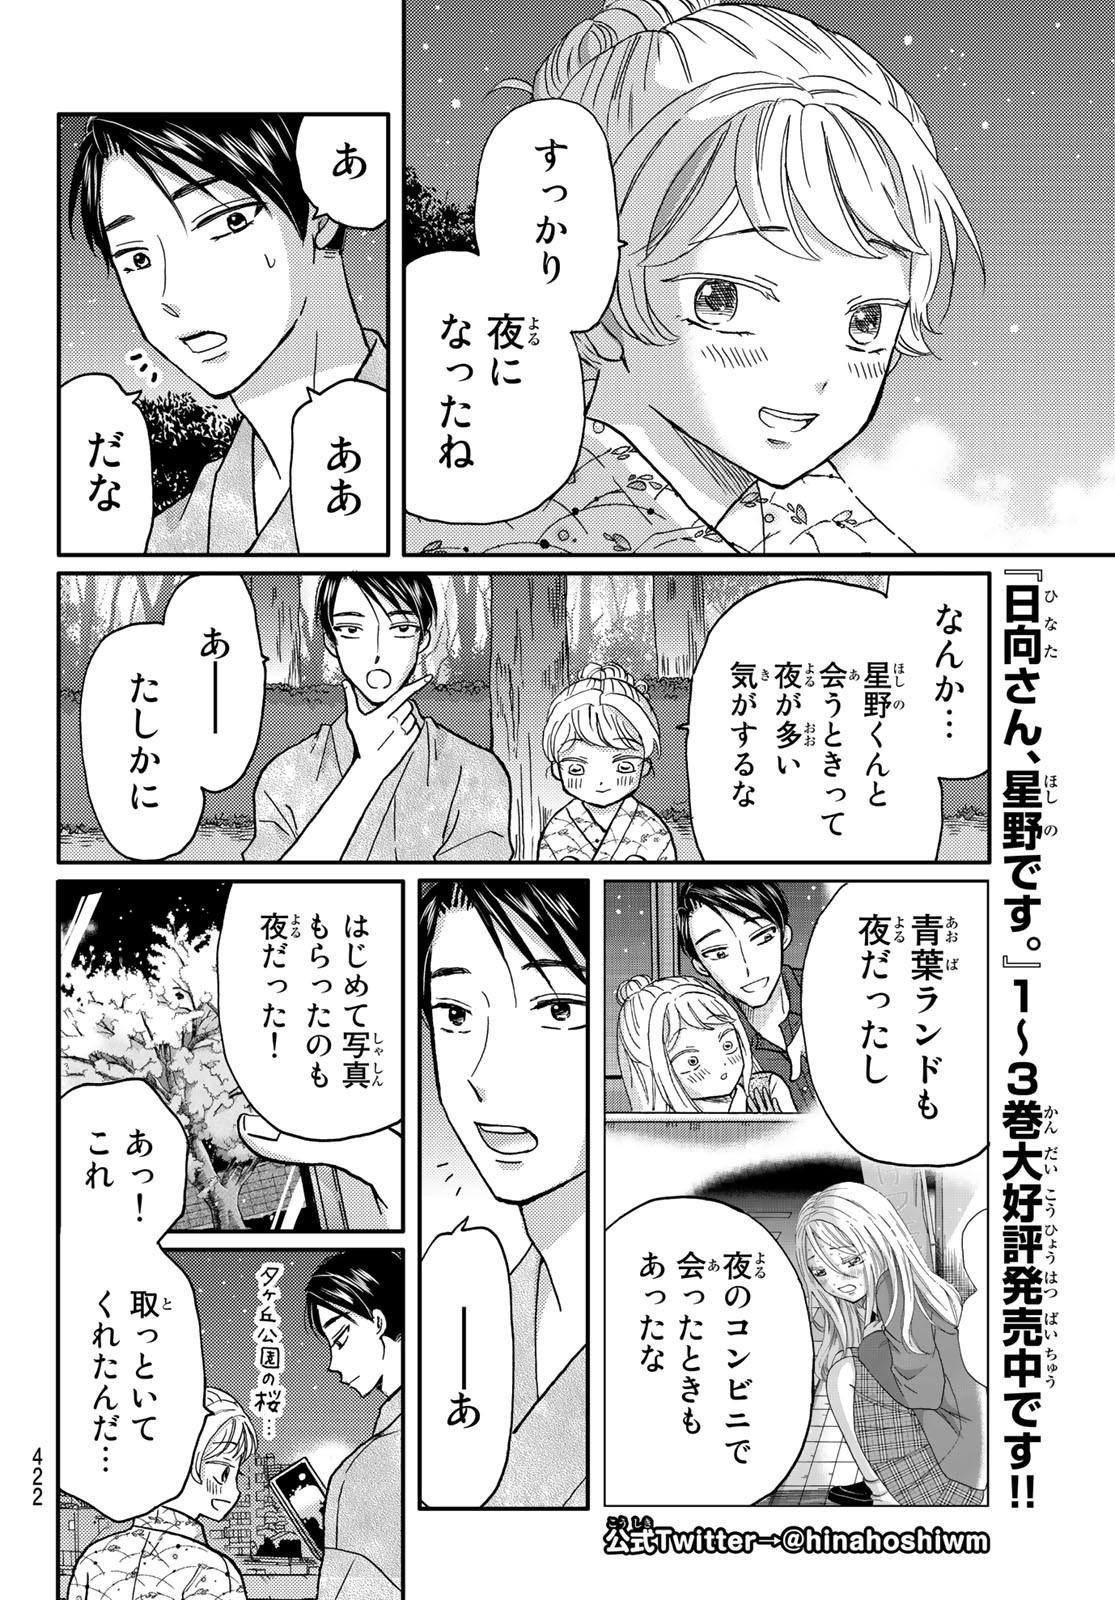 Hinata-san, Hoshino desu. - Chapter 047 - Page 2